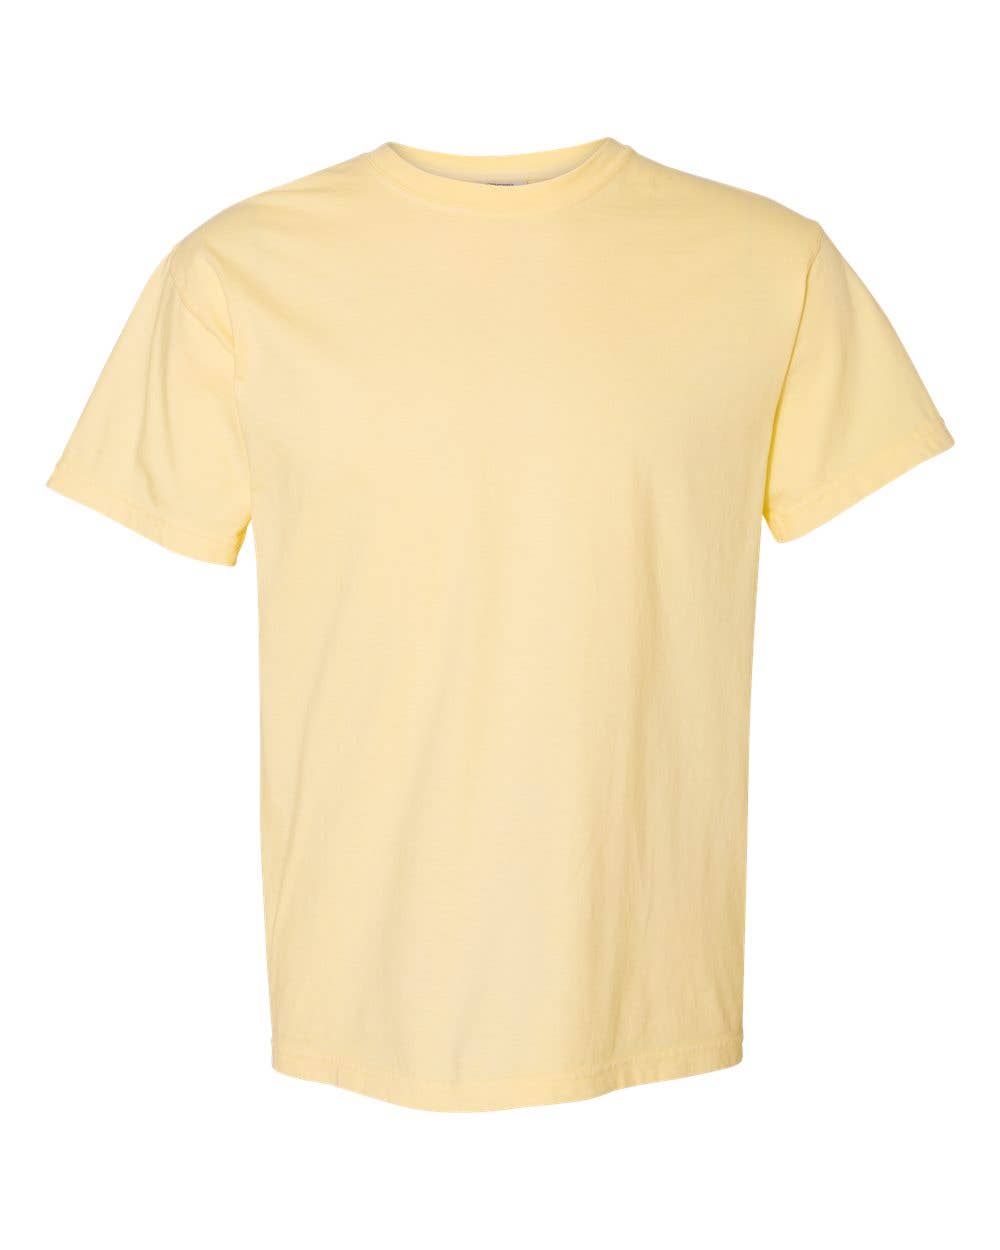 Wholesale Comfort Colors Shirts